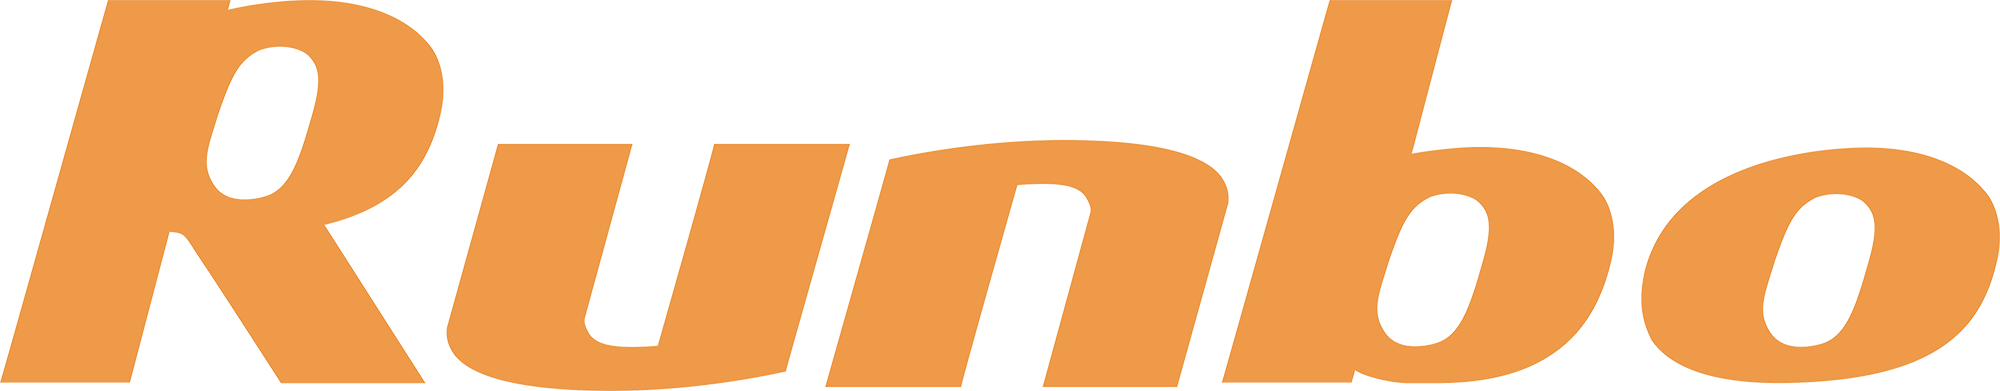 Runbo logo